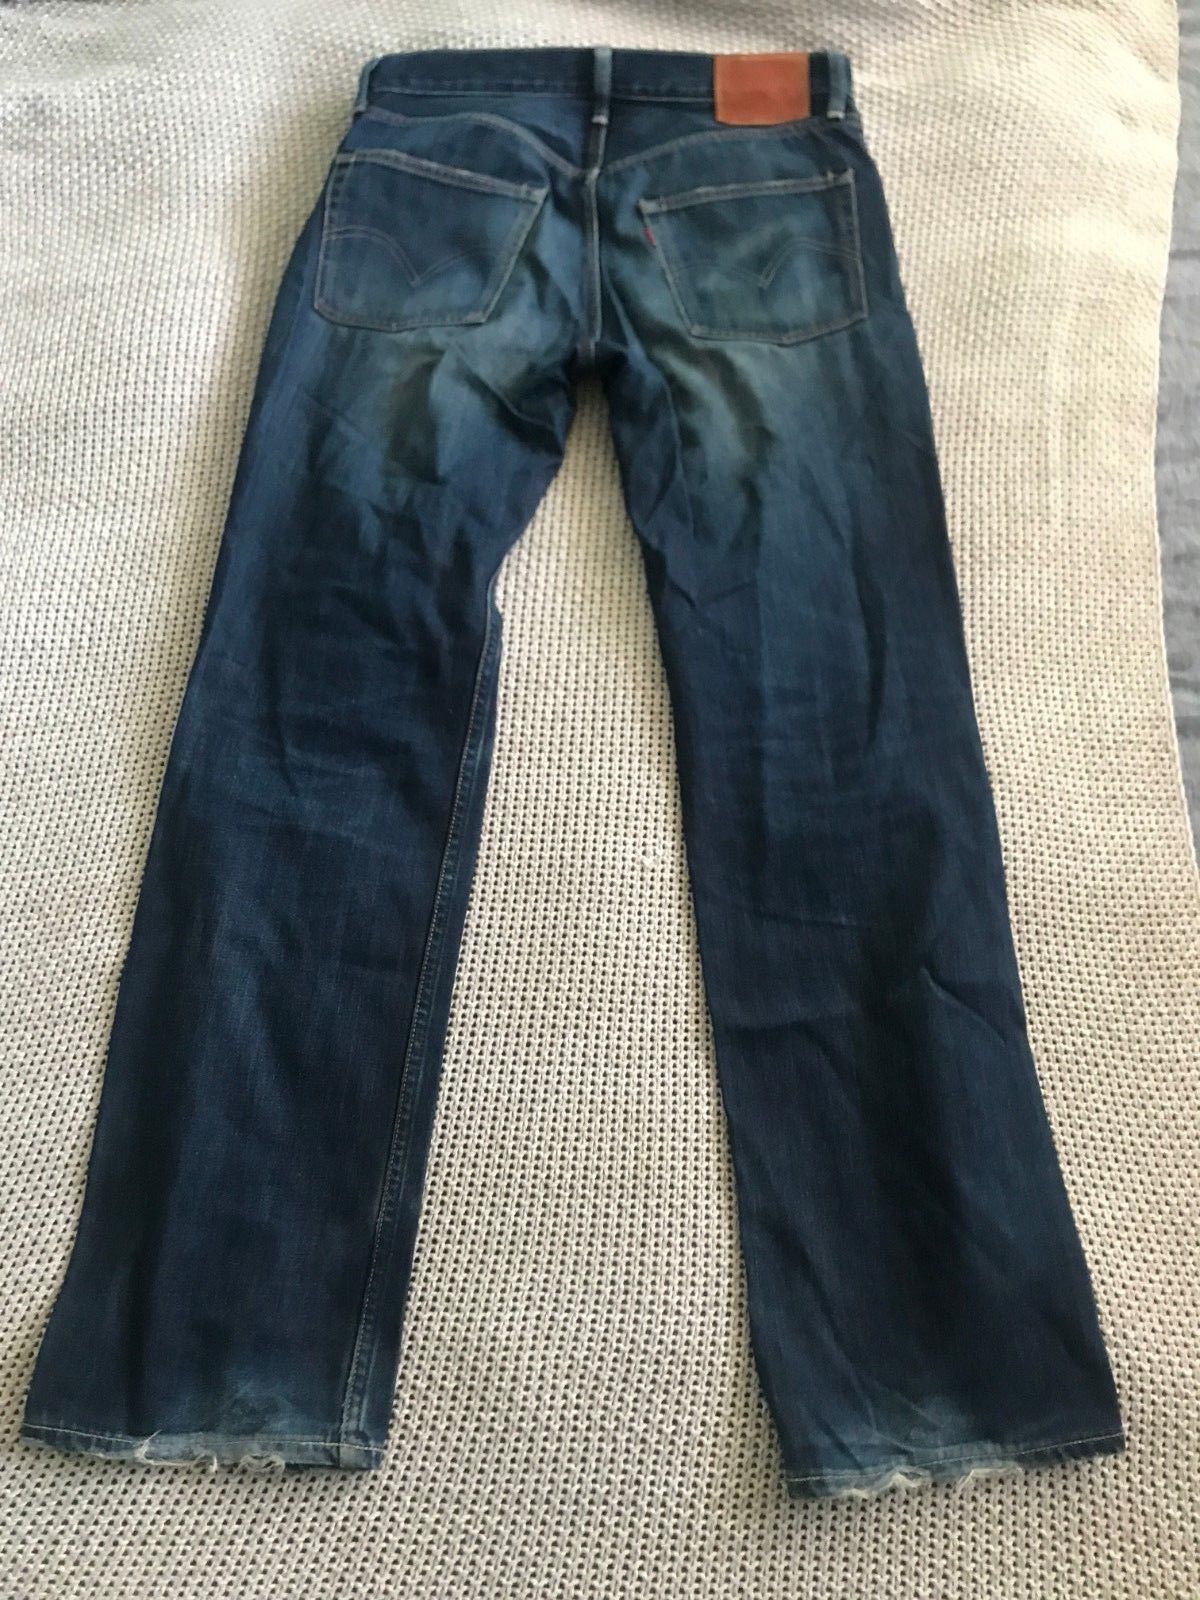 levi's classic blue jeans